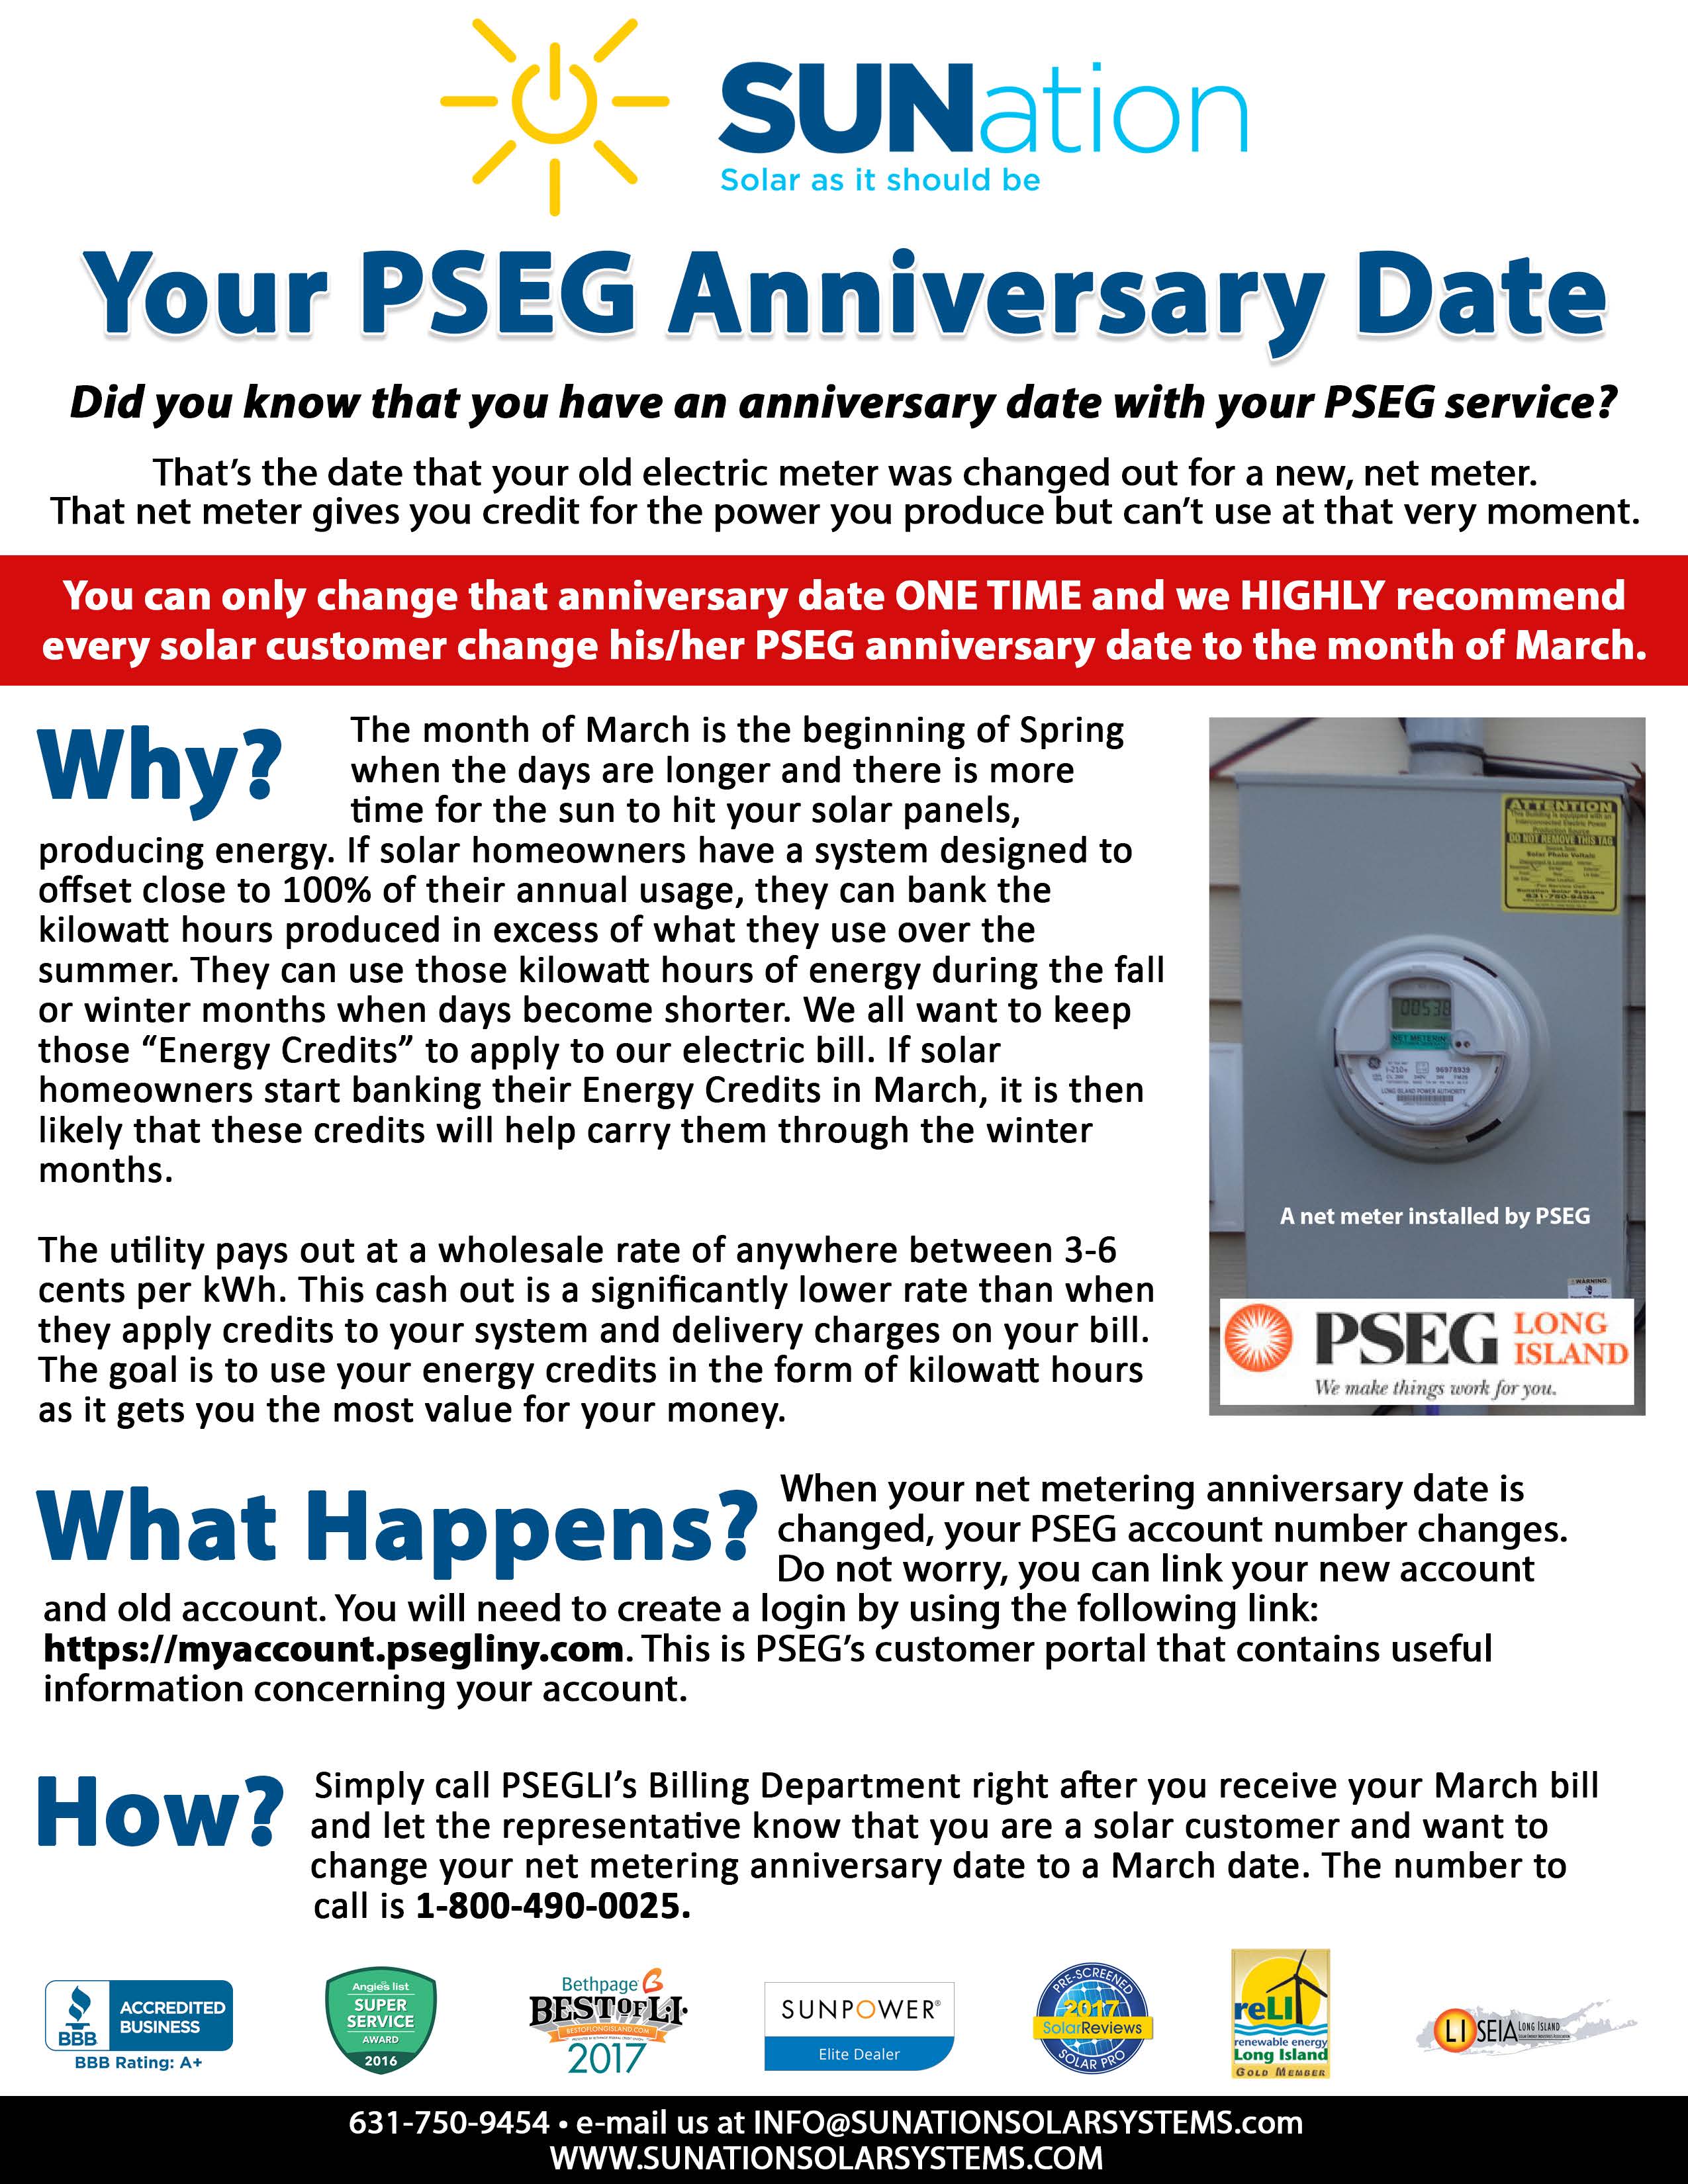 pseg-anniversary-date-sunation-energy